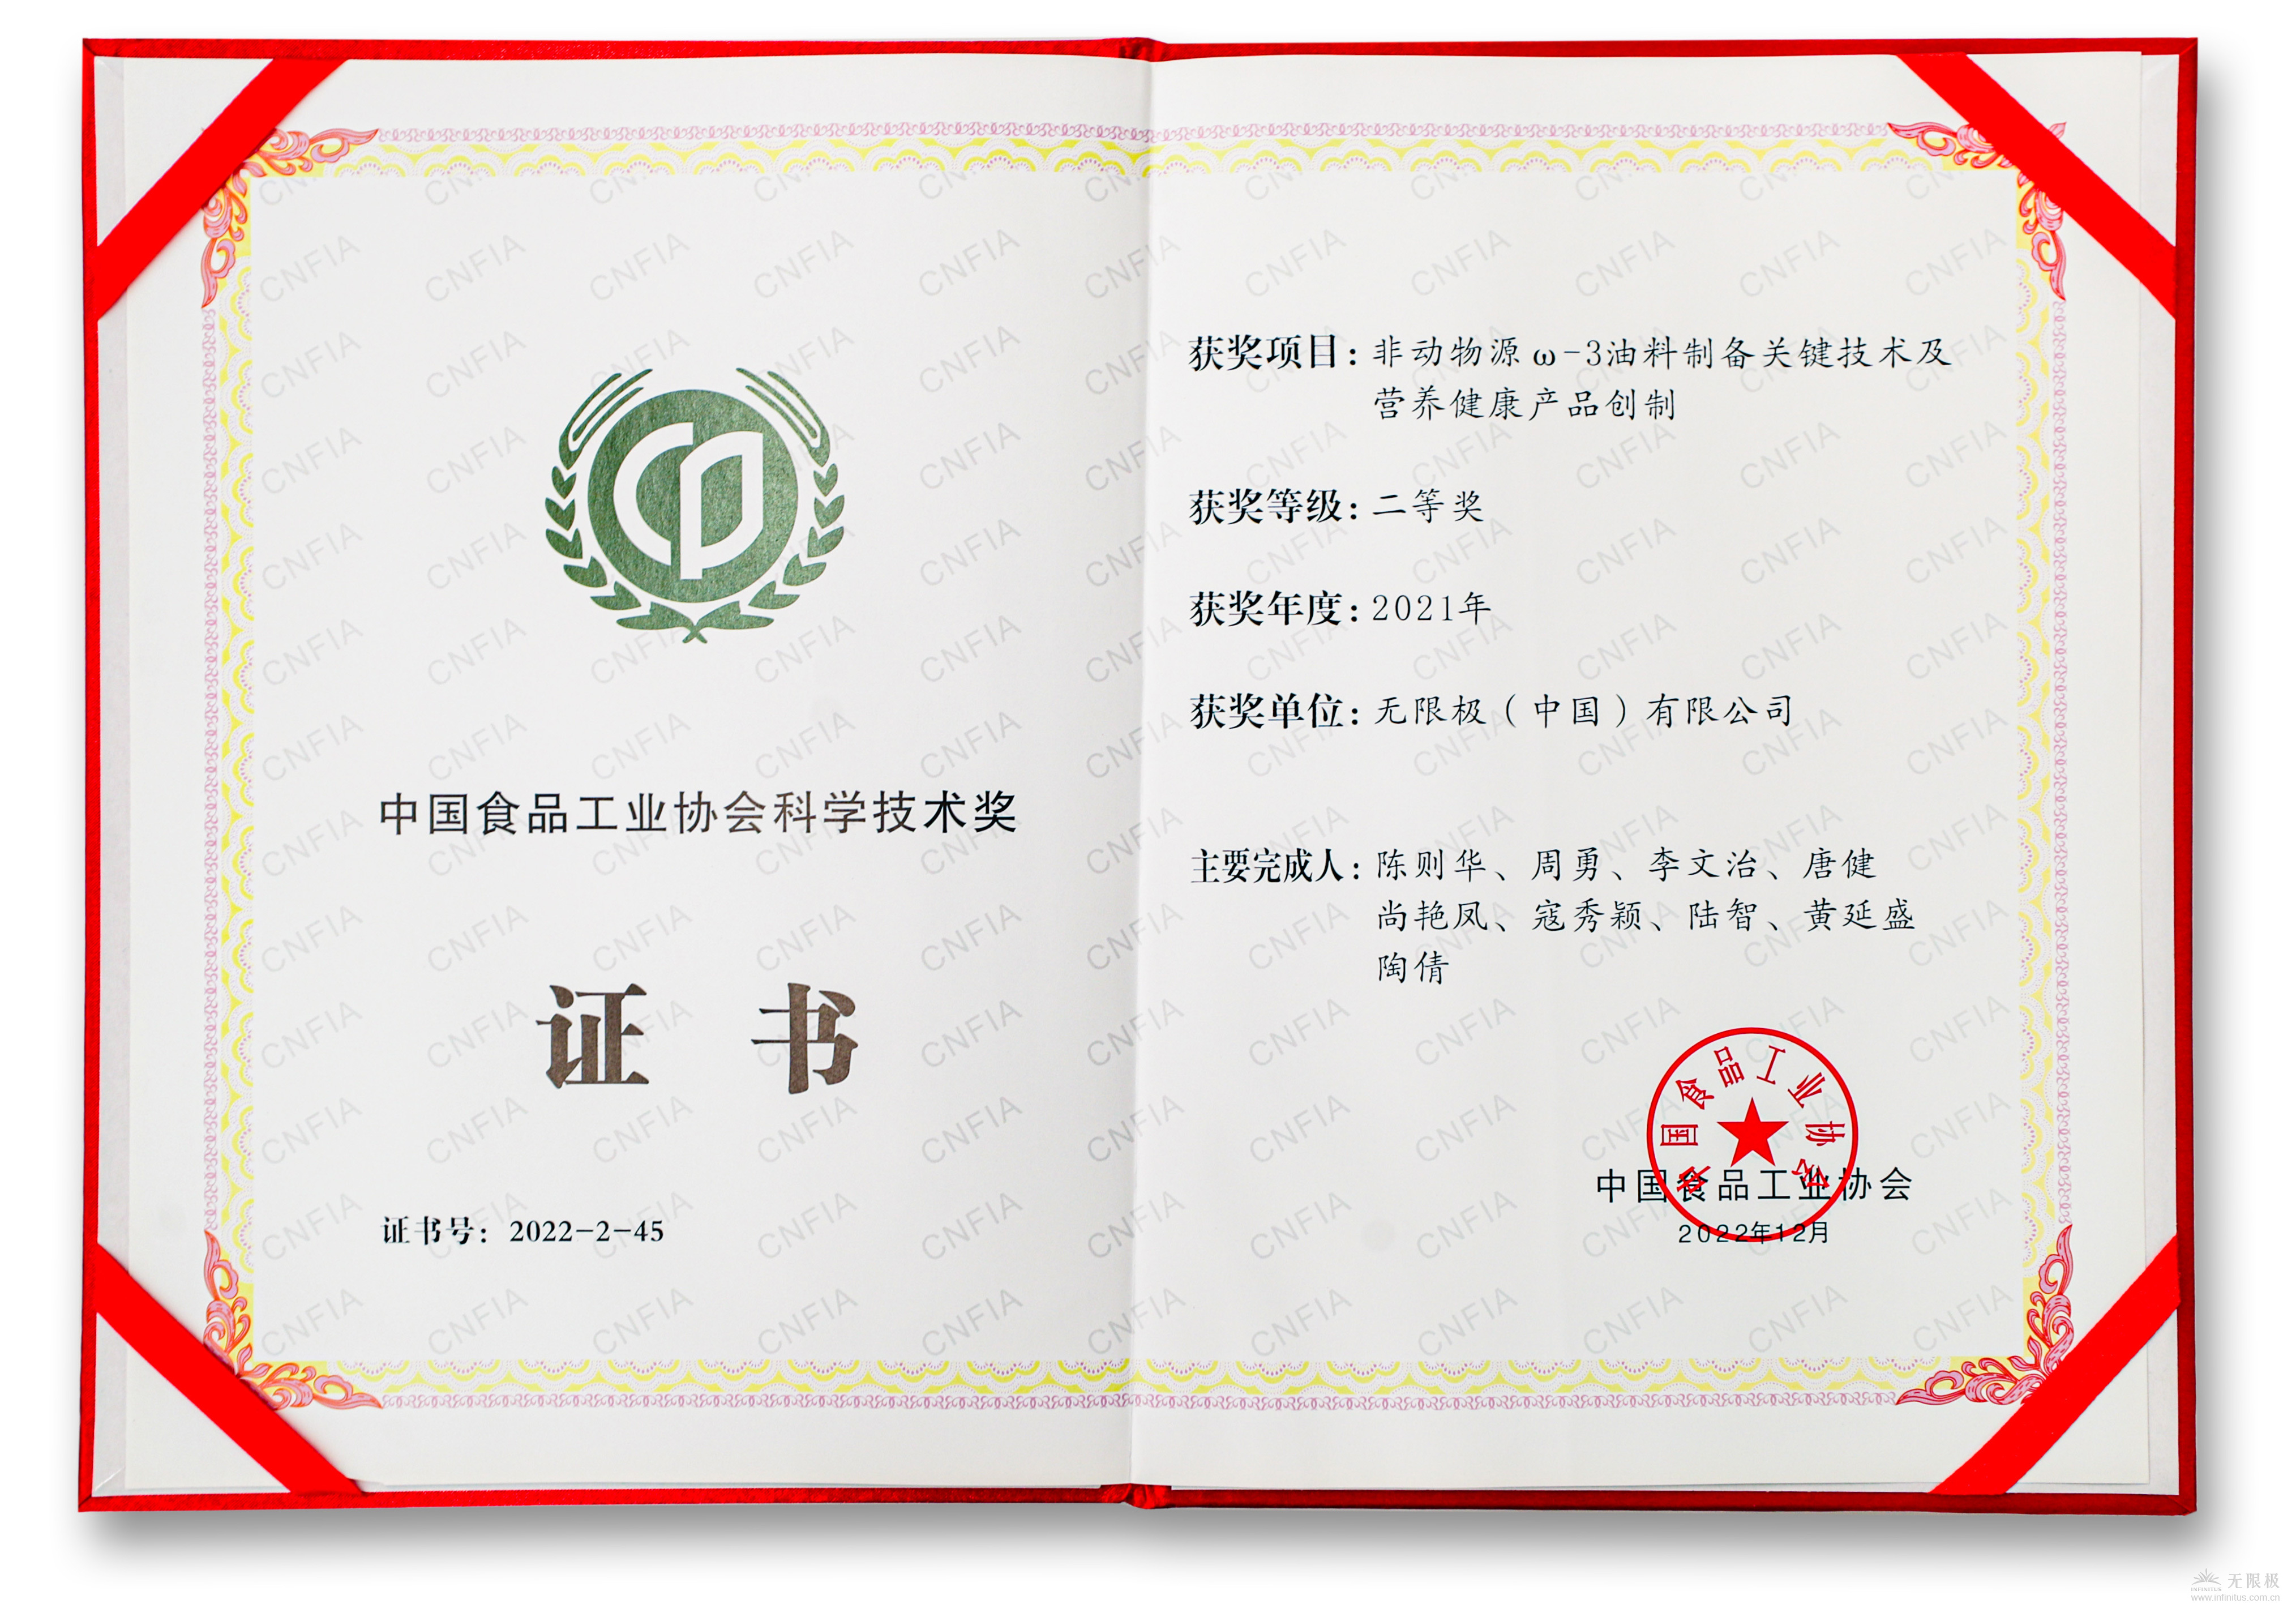 中国食品工业协会科学技术奖二等奖证书_03